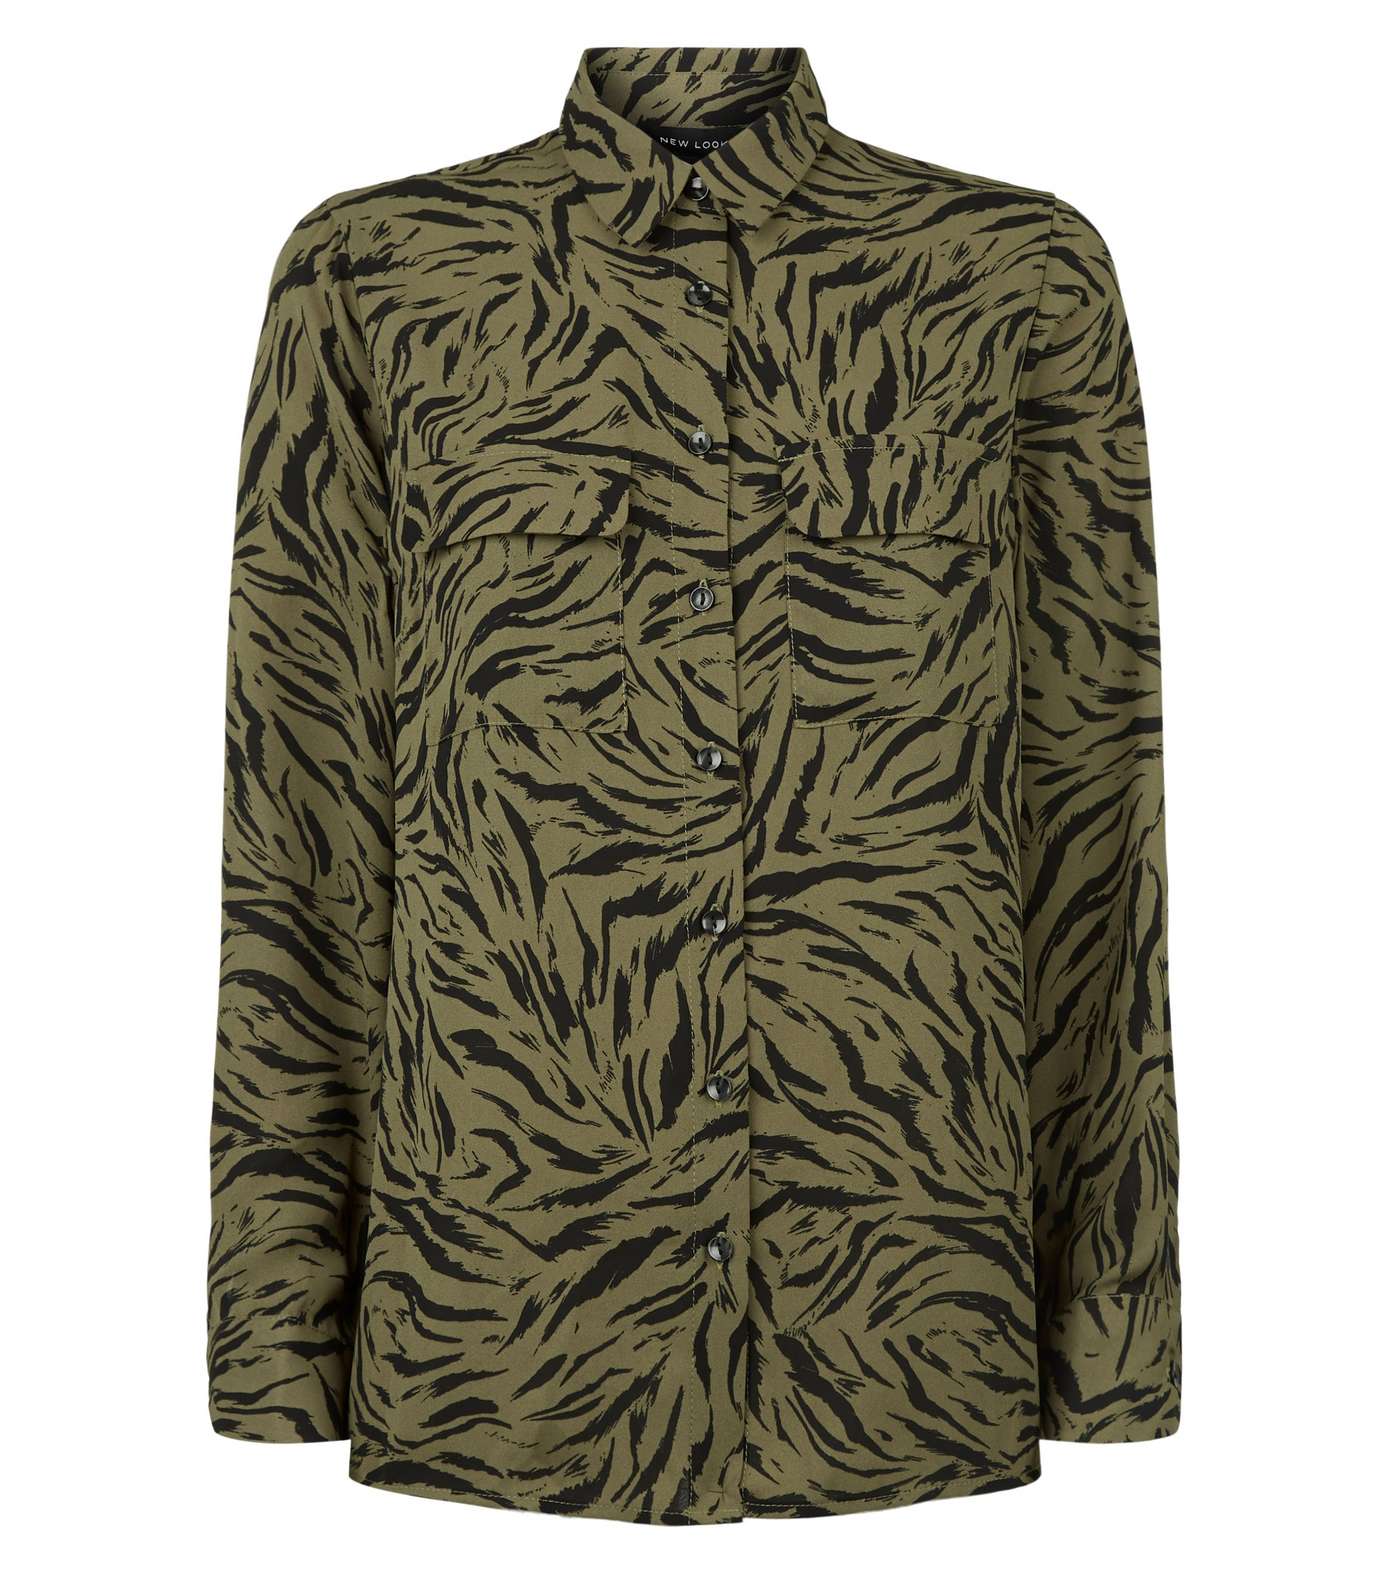 Green Tiger Print Long Sleeve Shirt Image 4